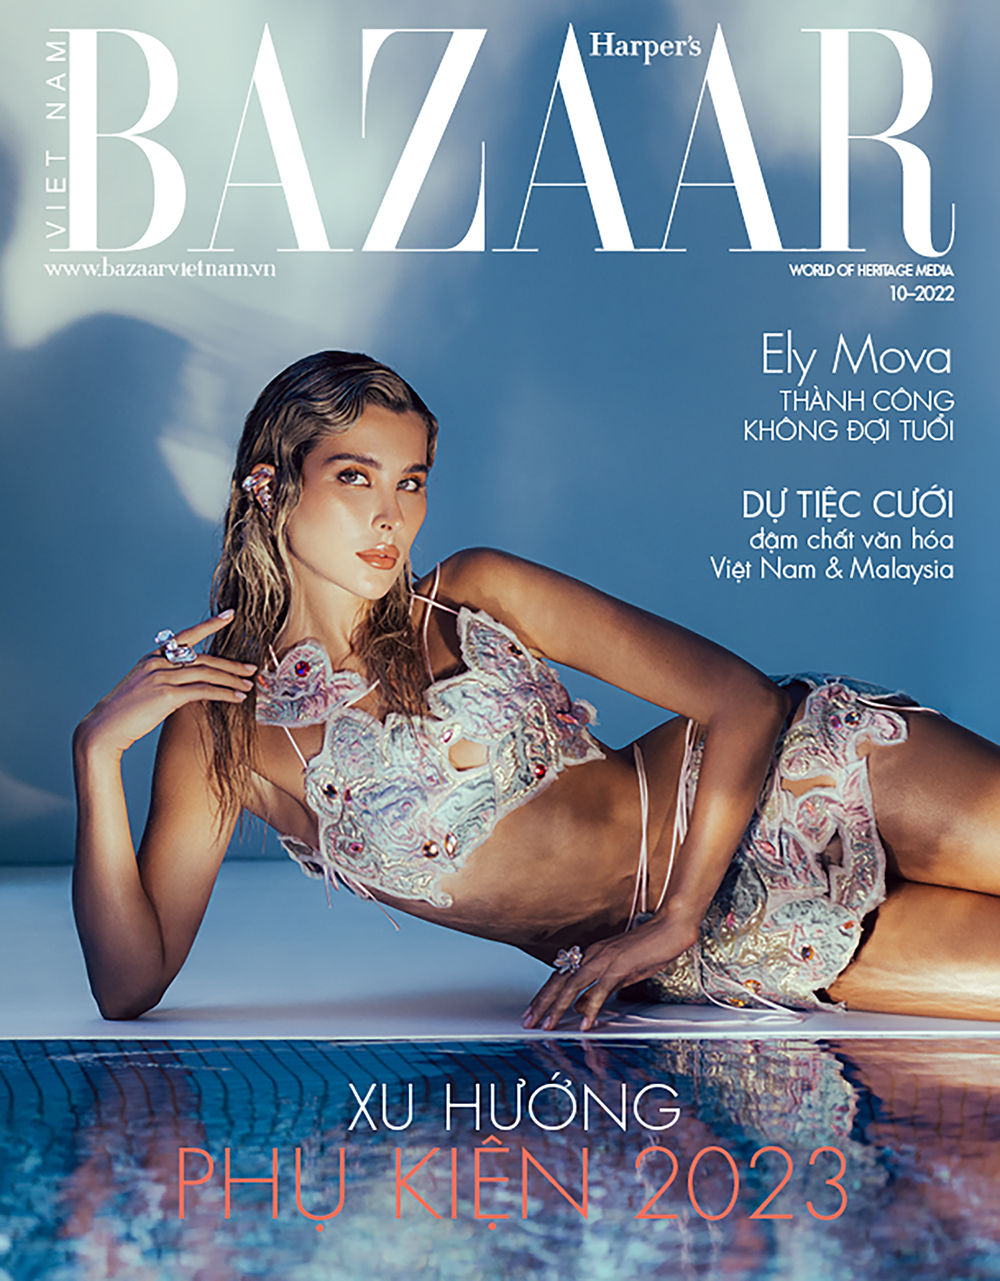 Ely Mova trên trang bìa Harper’s Bazaar Việt Nam 10/22.